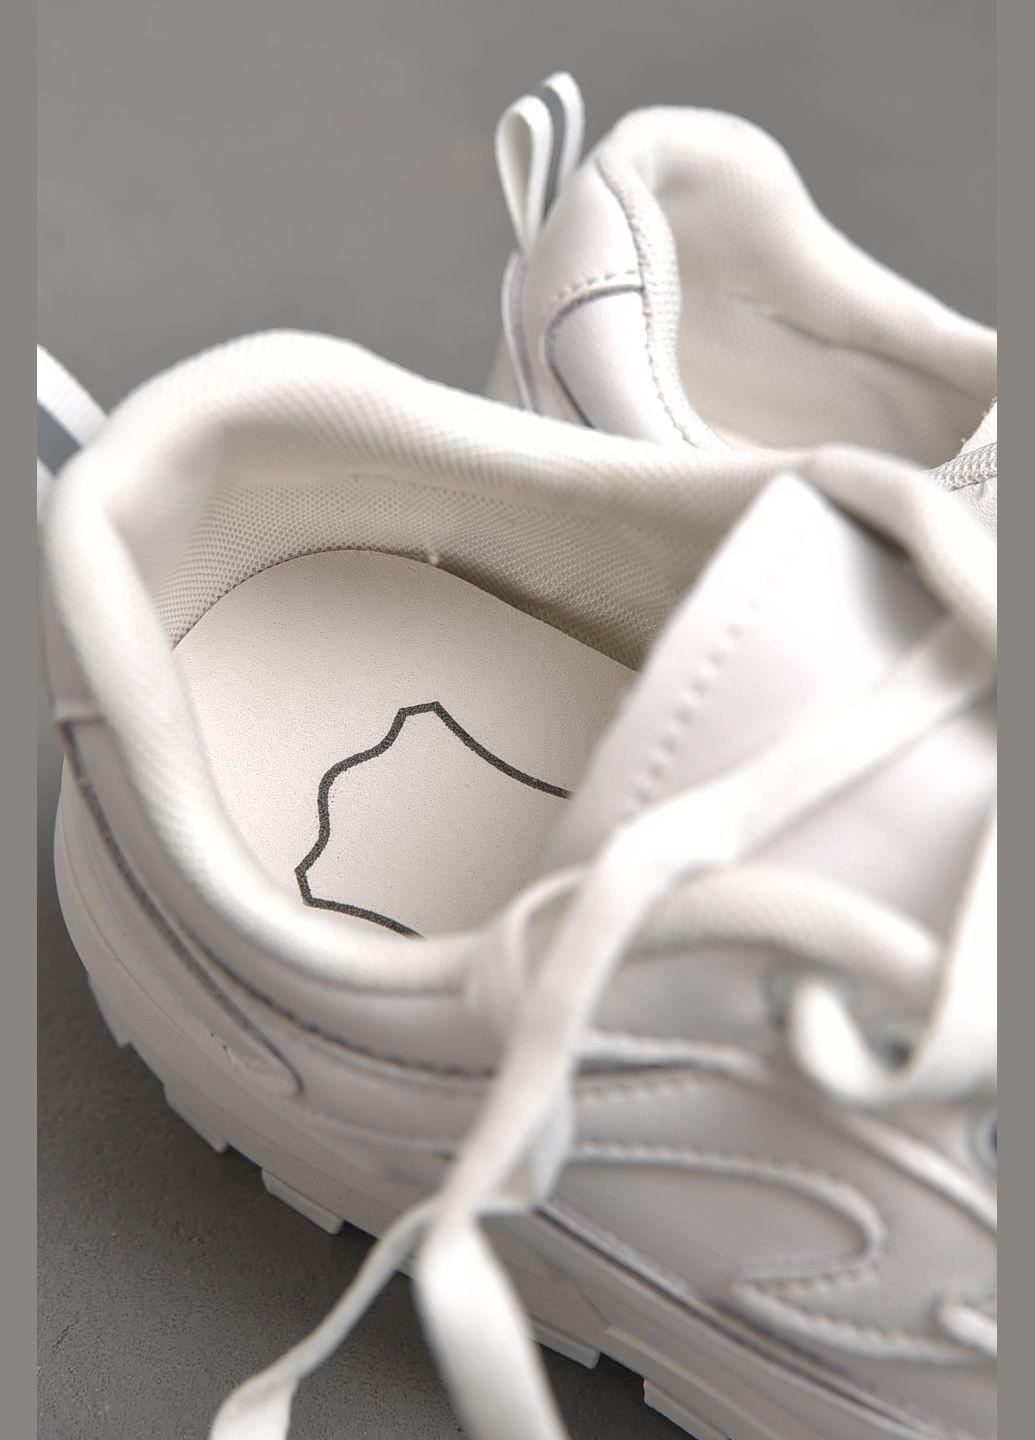 Білі осінні кросівки жіночі натуральна шкіра білого кольору на шнурівці Let's Shop